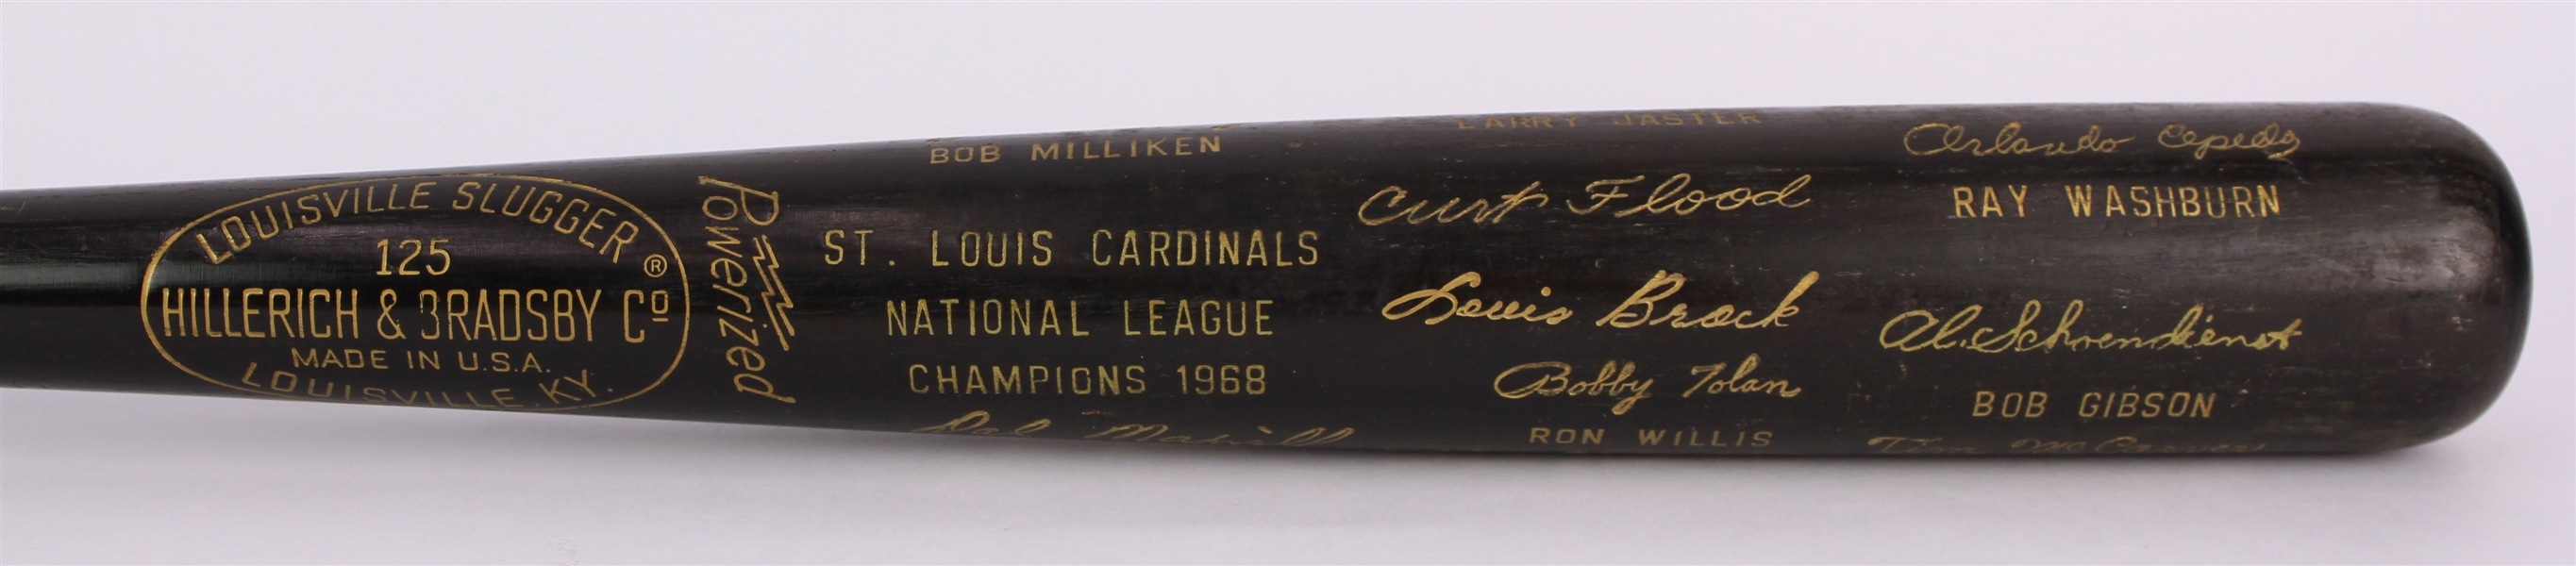 1968 St. Louis Cardinals National League Champions H&B Louisville Slugger Commemorative Black Bat